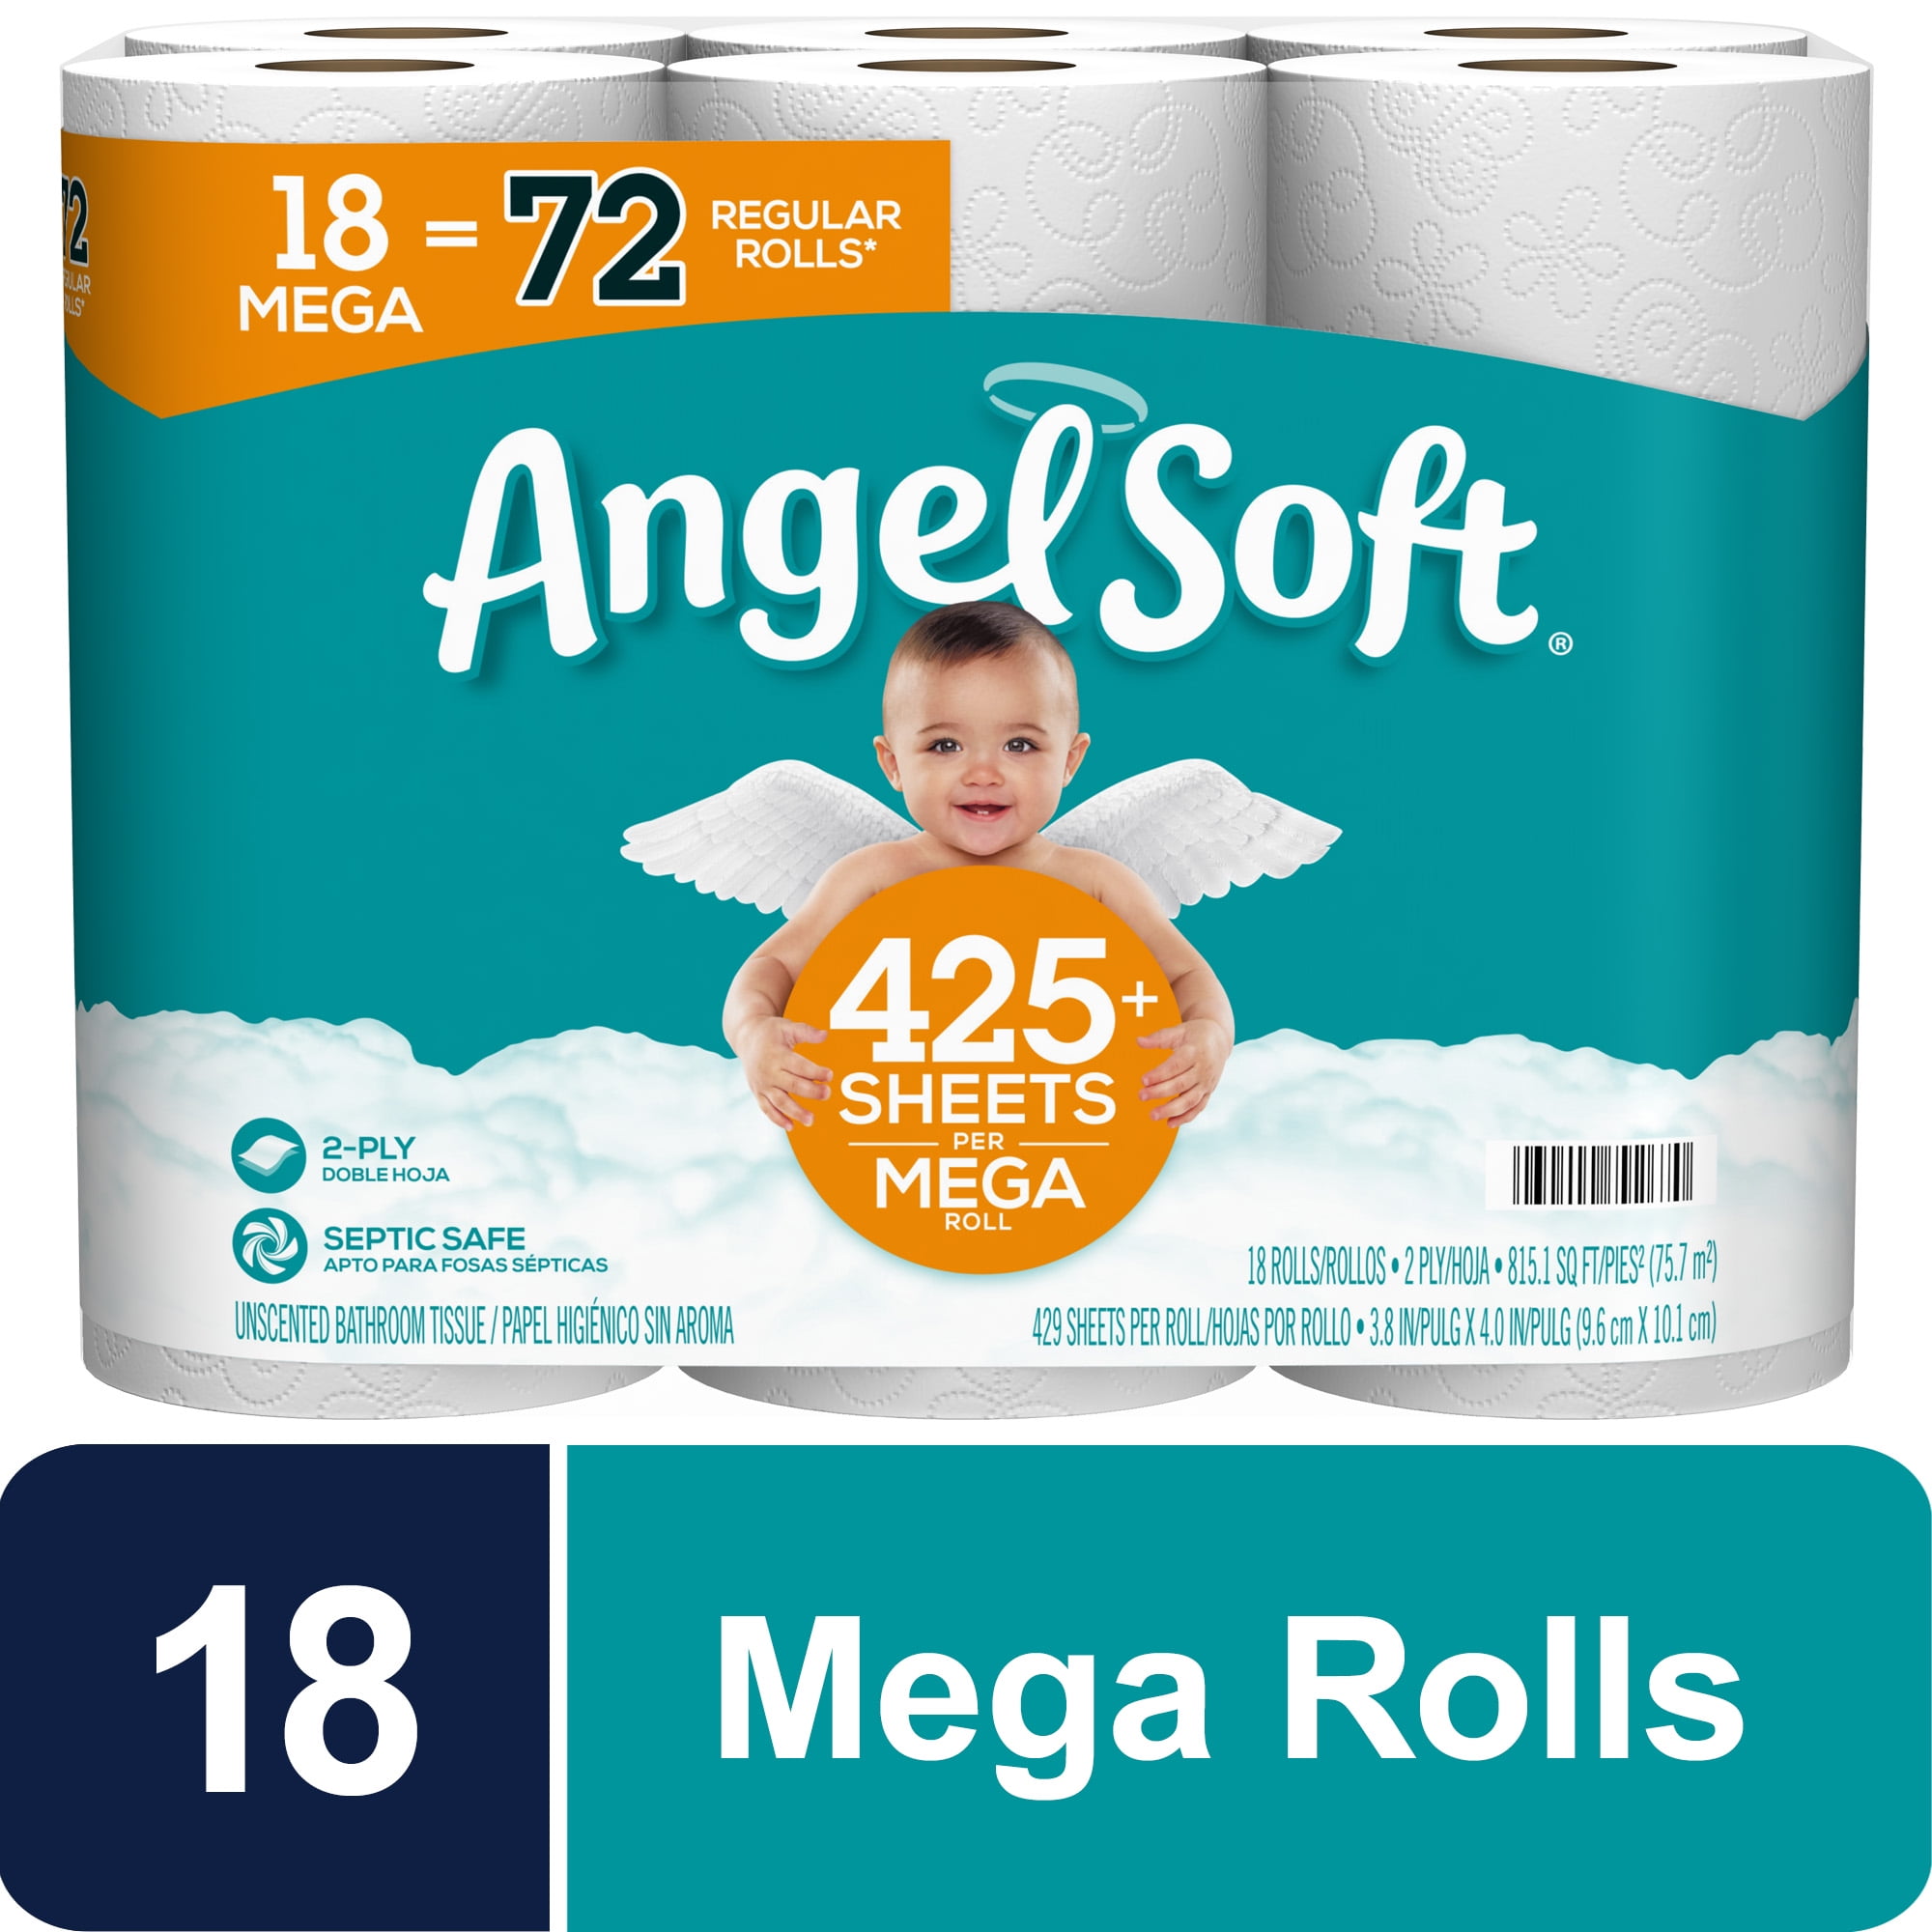 Moonari Toilet Paper 12 Rolls, Ultra Soft, 300 Sheets/Roll,Rapid-Dissolving